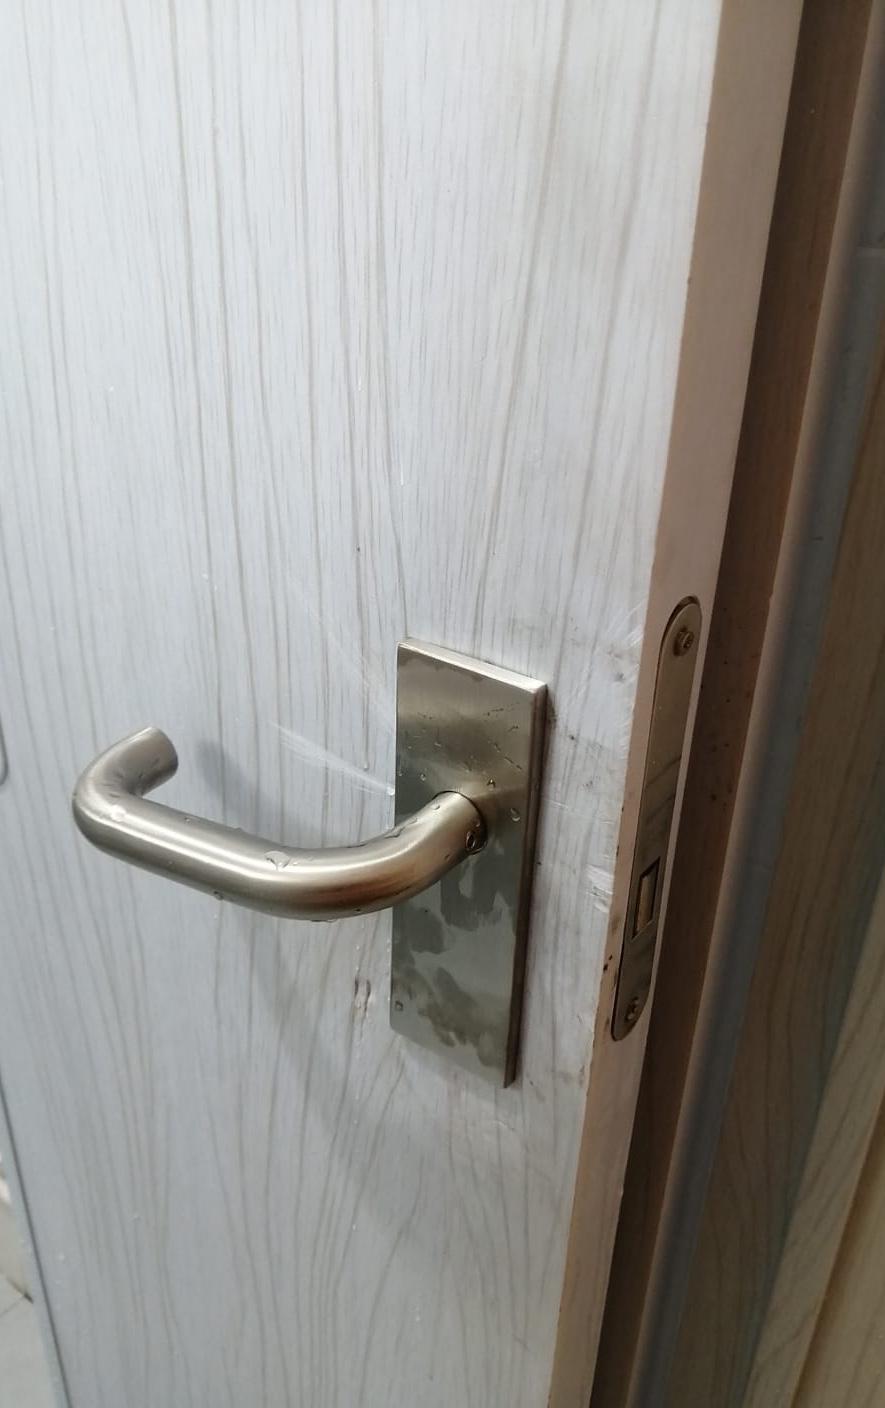 Stainless Steel Door Handle Replacement In Bedok